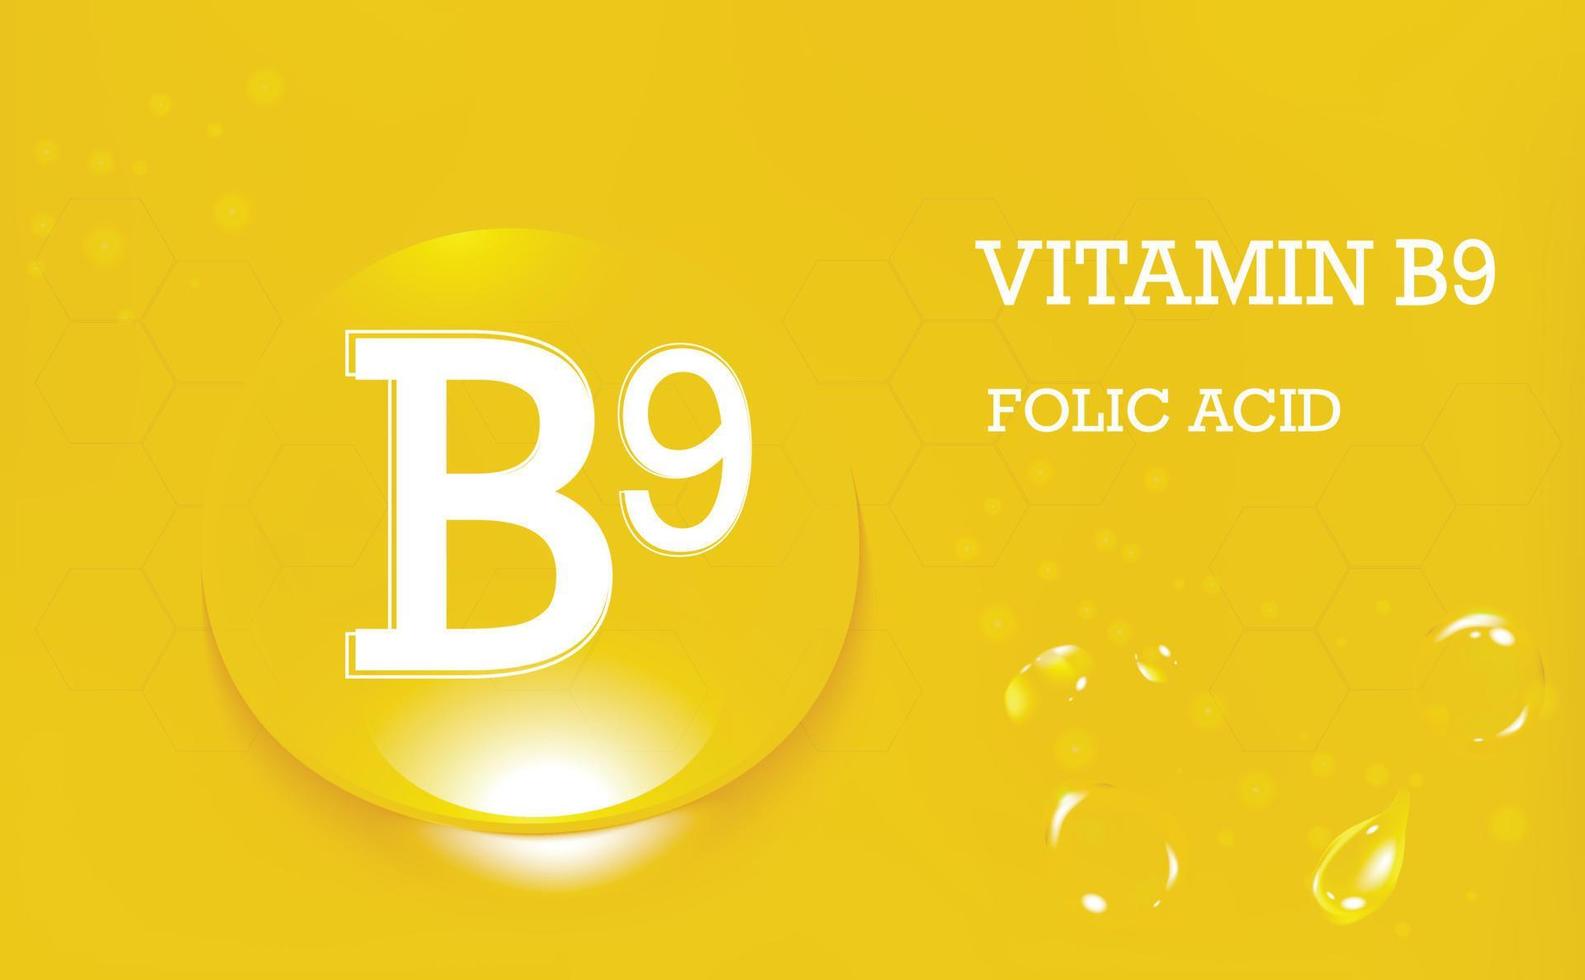 vitamine b9, acide folique. gouttes d'eau sur un fond dégradé jaune. complément alimentaire et mode de vie sain. affiche. illustration vectorielle vecteur